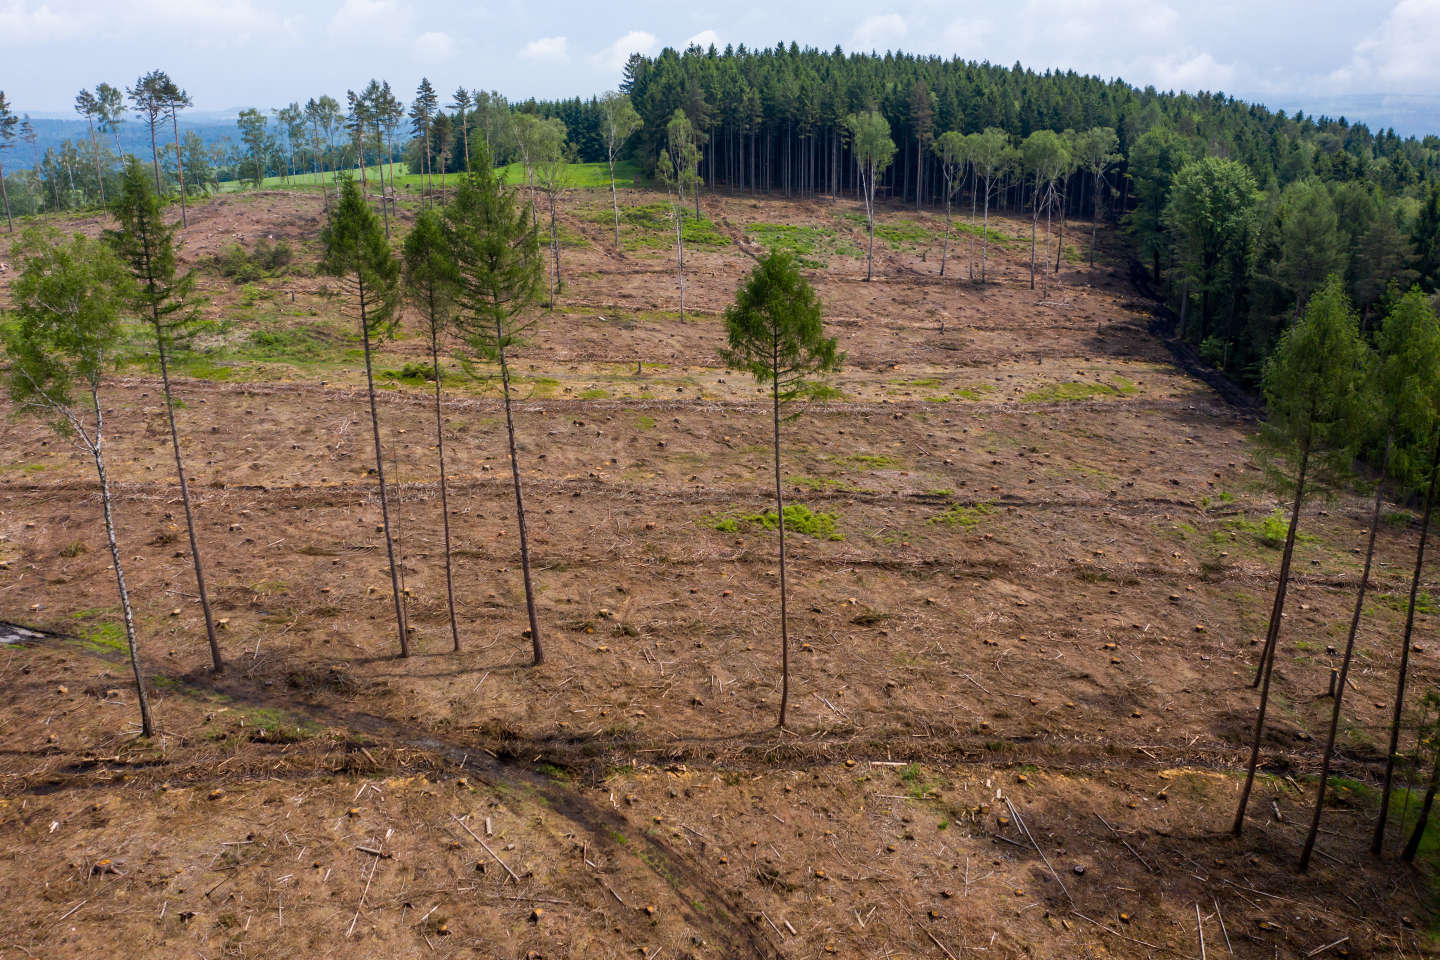 « La stratégie climatique de l’Union européenne s’apprête à accroître la déforestation à l’échelle mondiale »